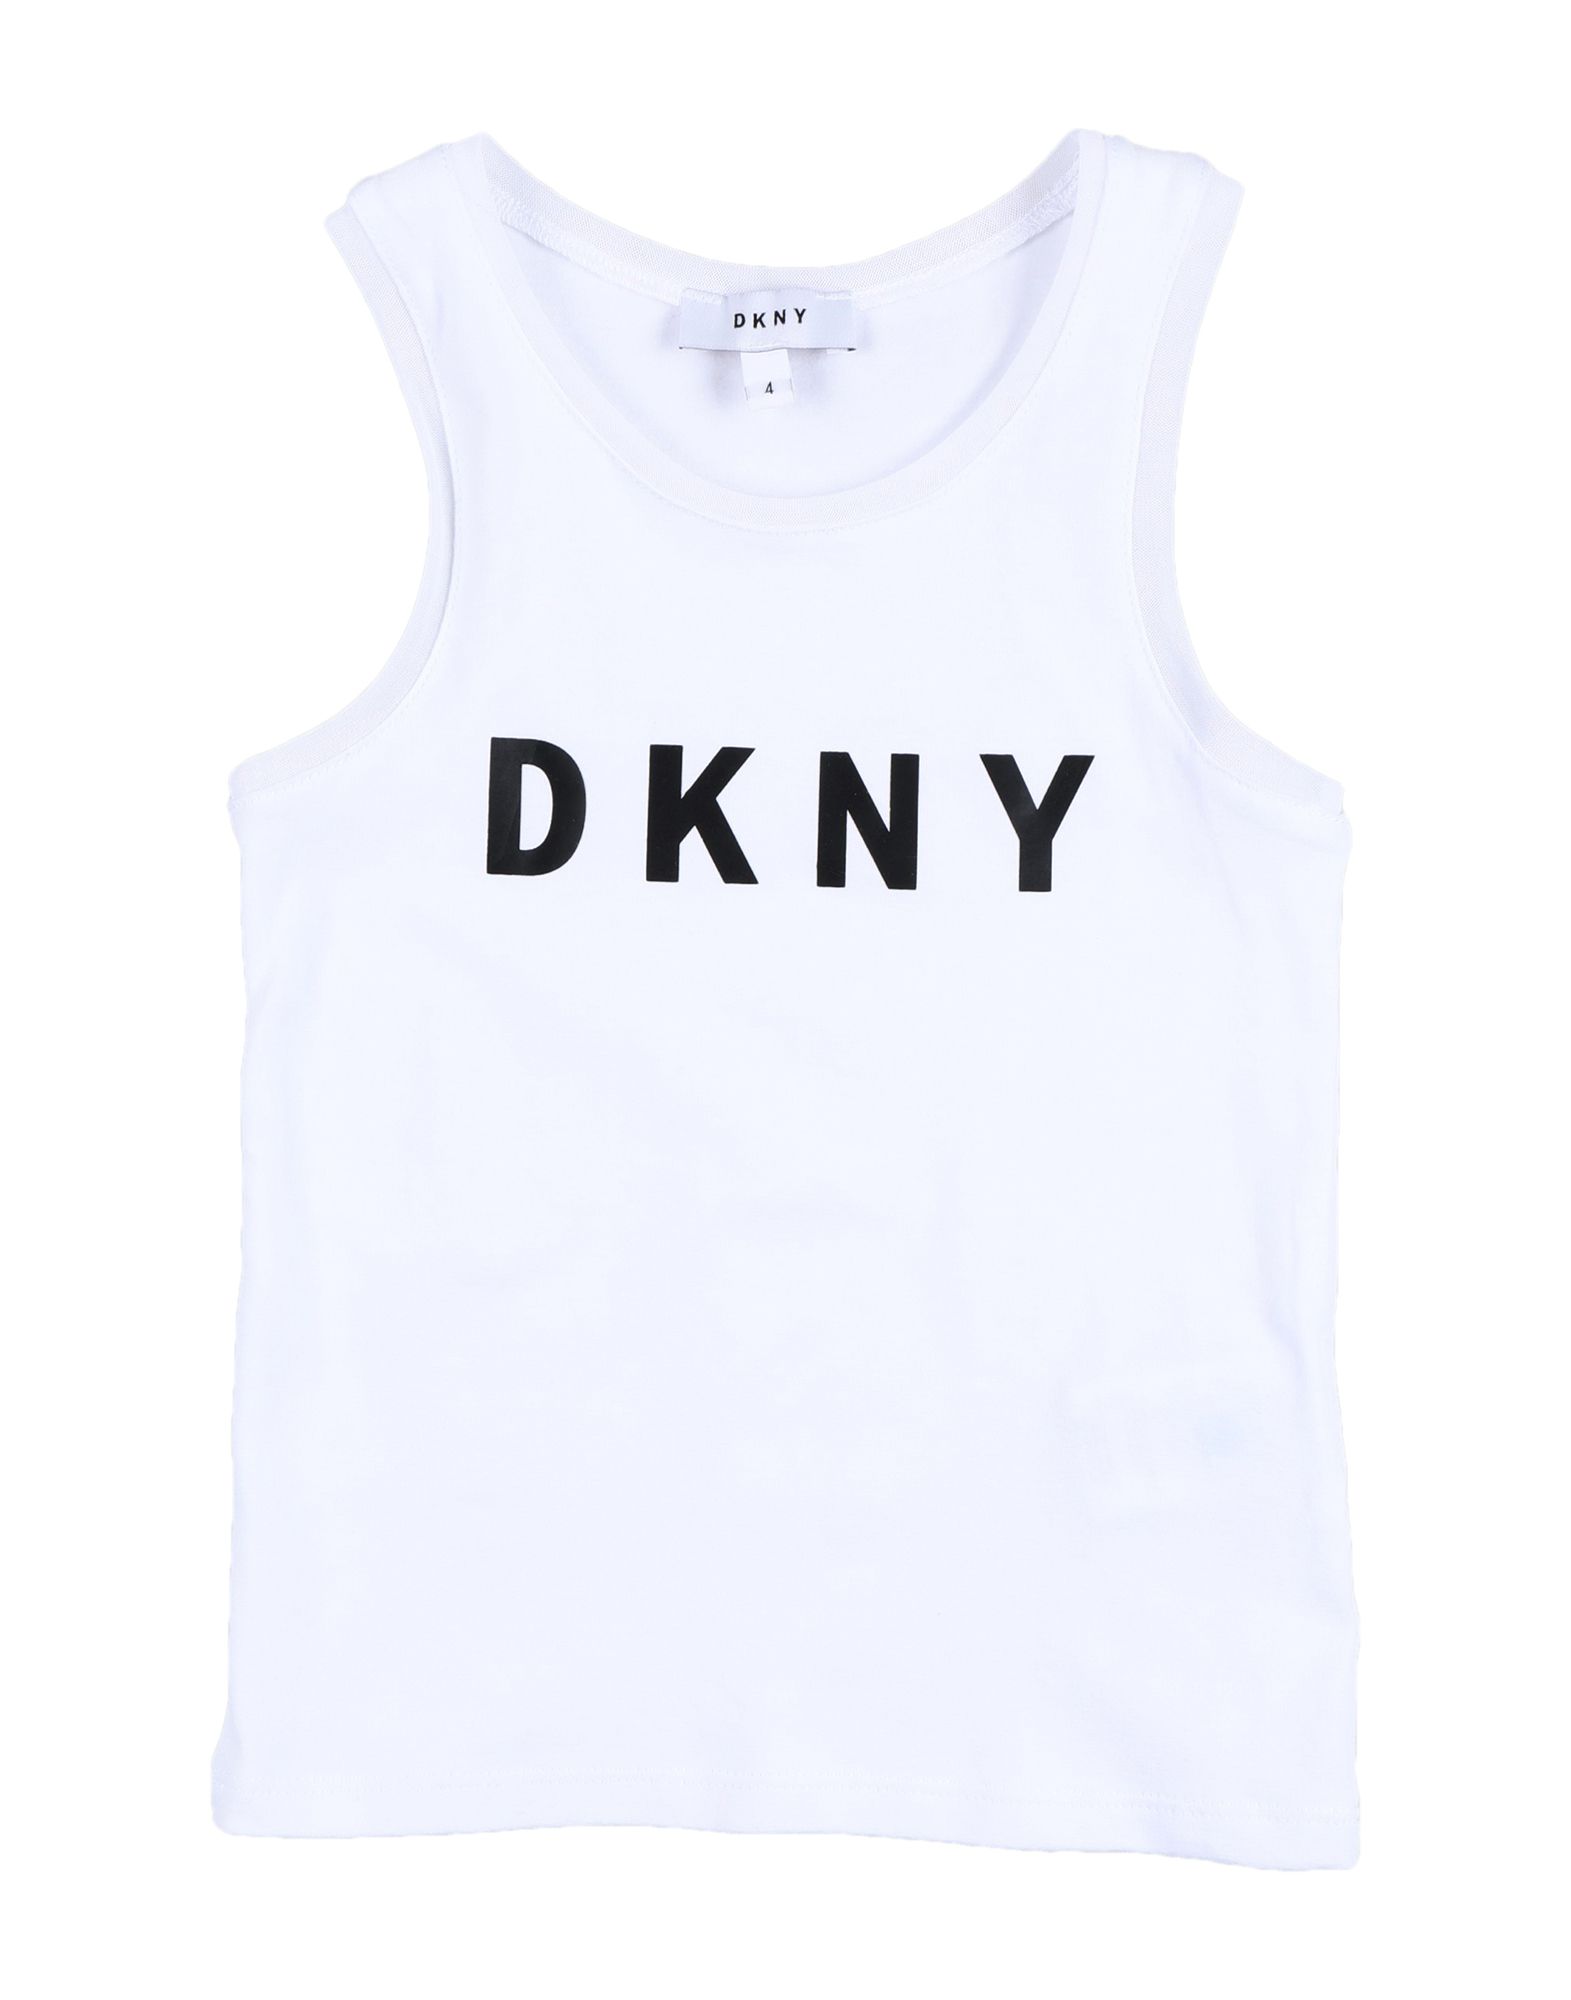 DKNY T-shirts Kinder Weiß von DKNY